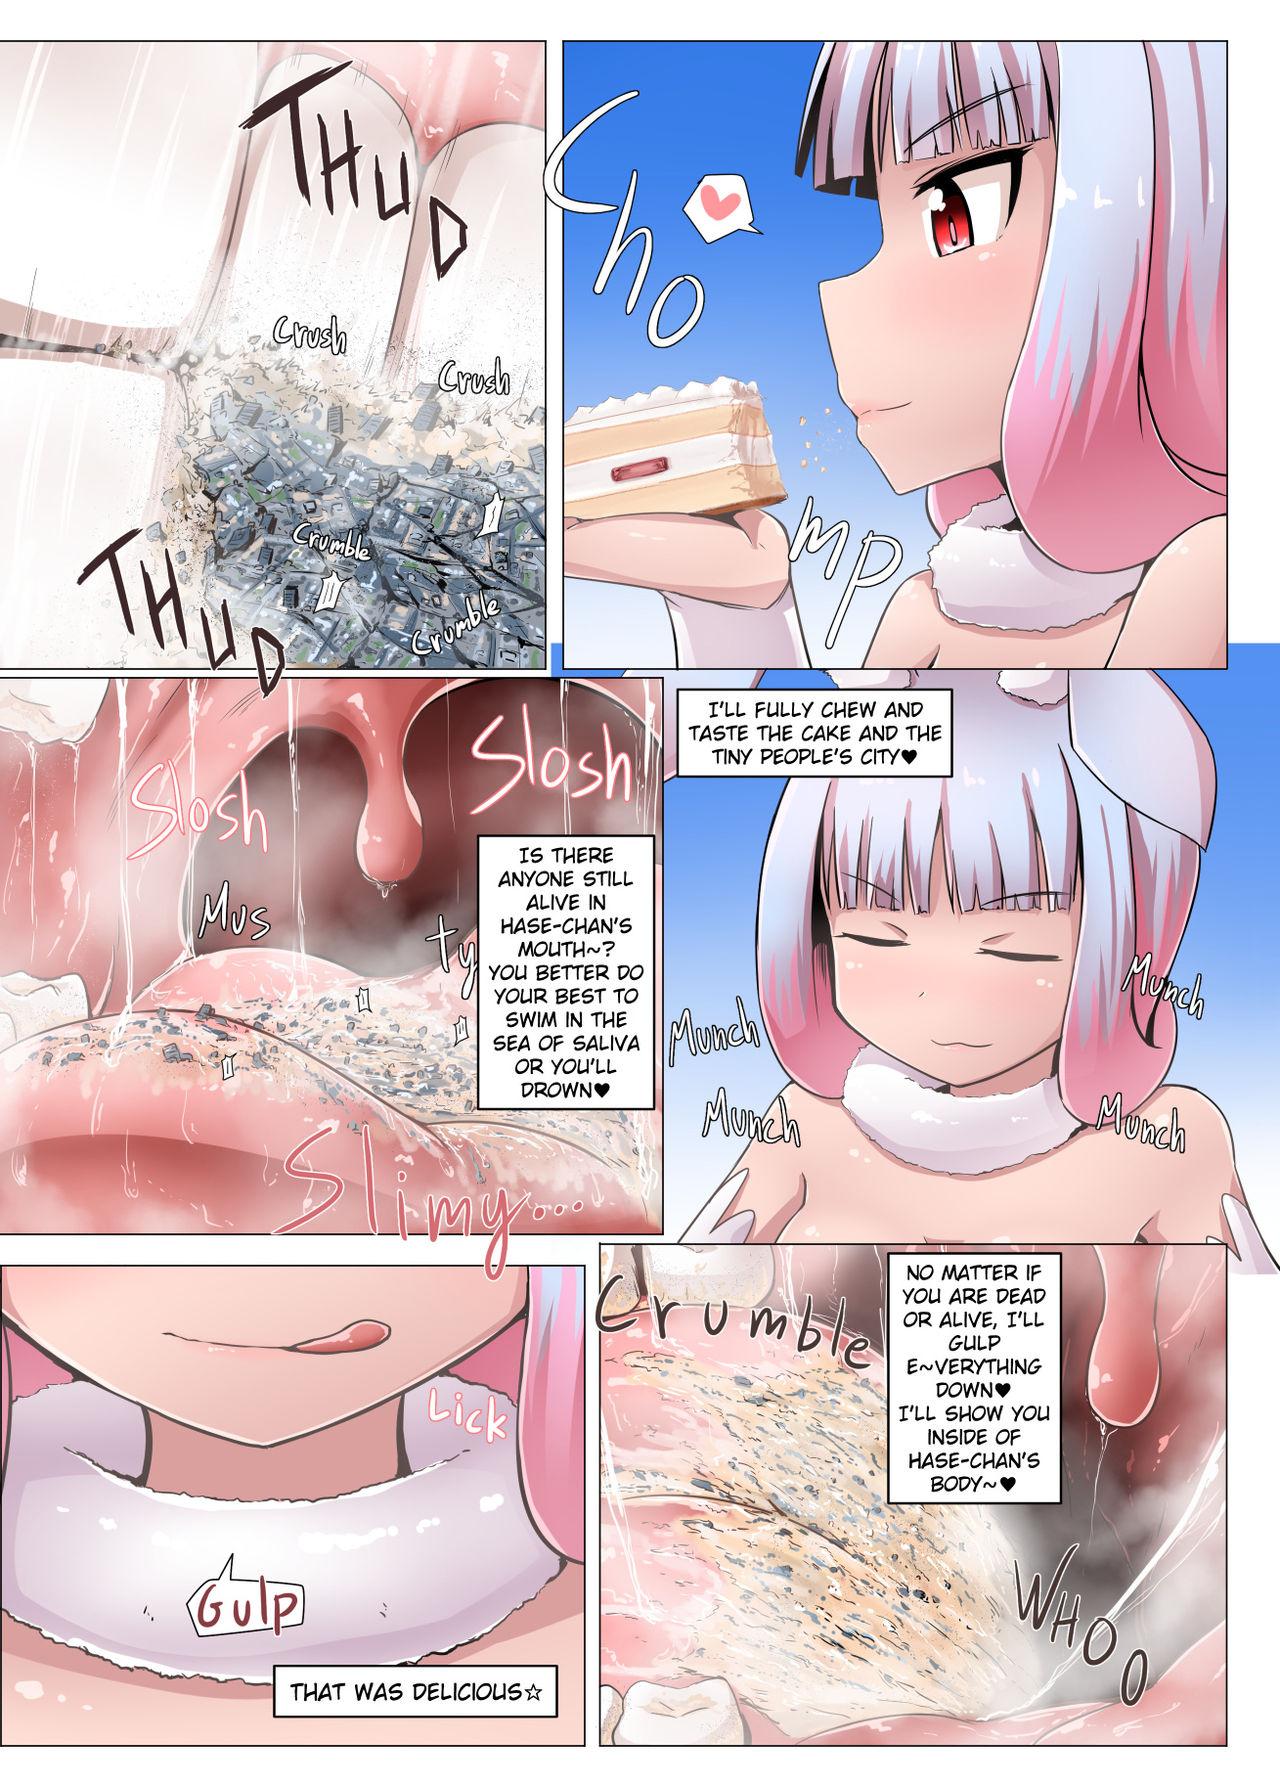 Rebolando Hentai Mahou Shoujo Haaze-chan - Original Anime - Page 12